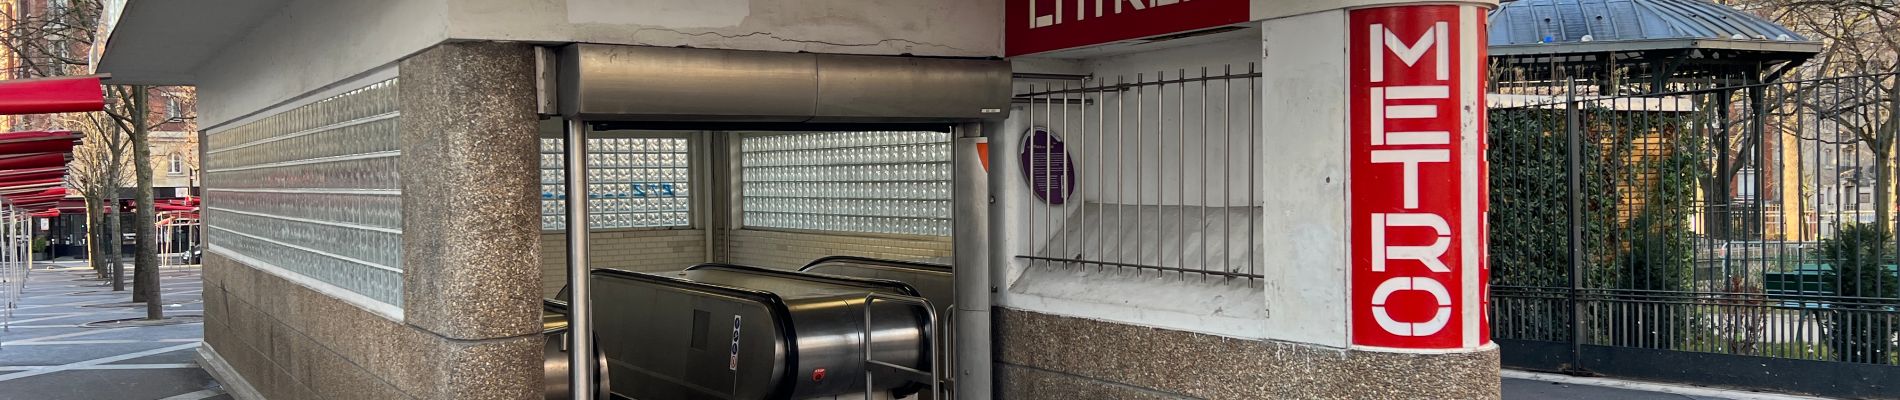 POI Paris - Metro place des fetes - Photo